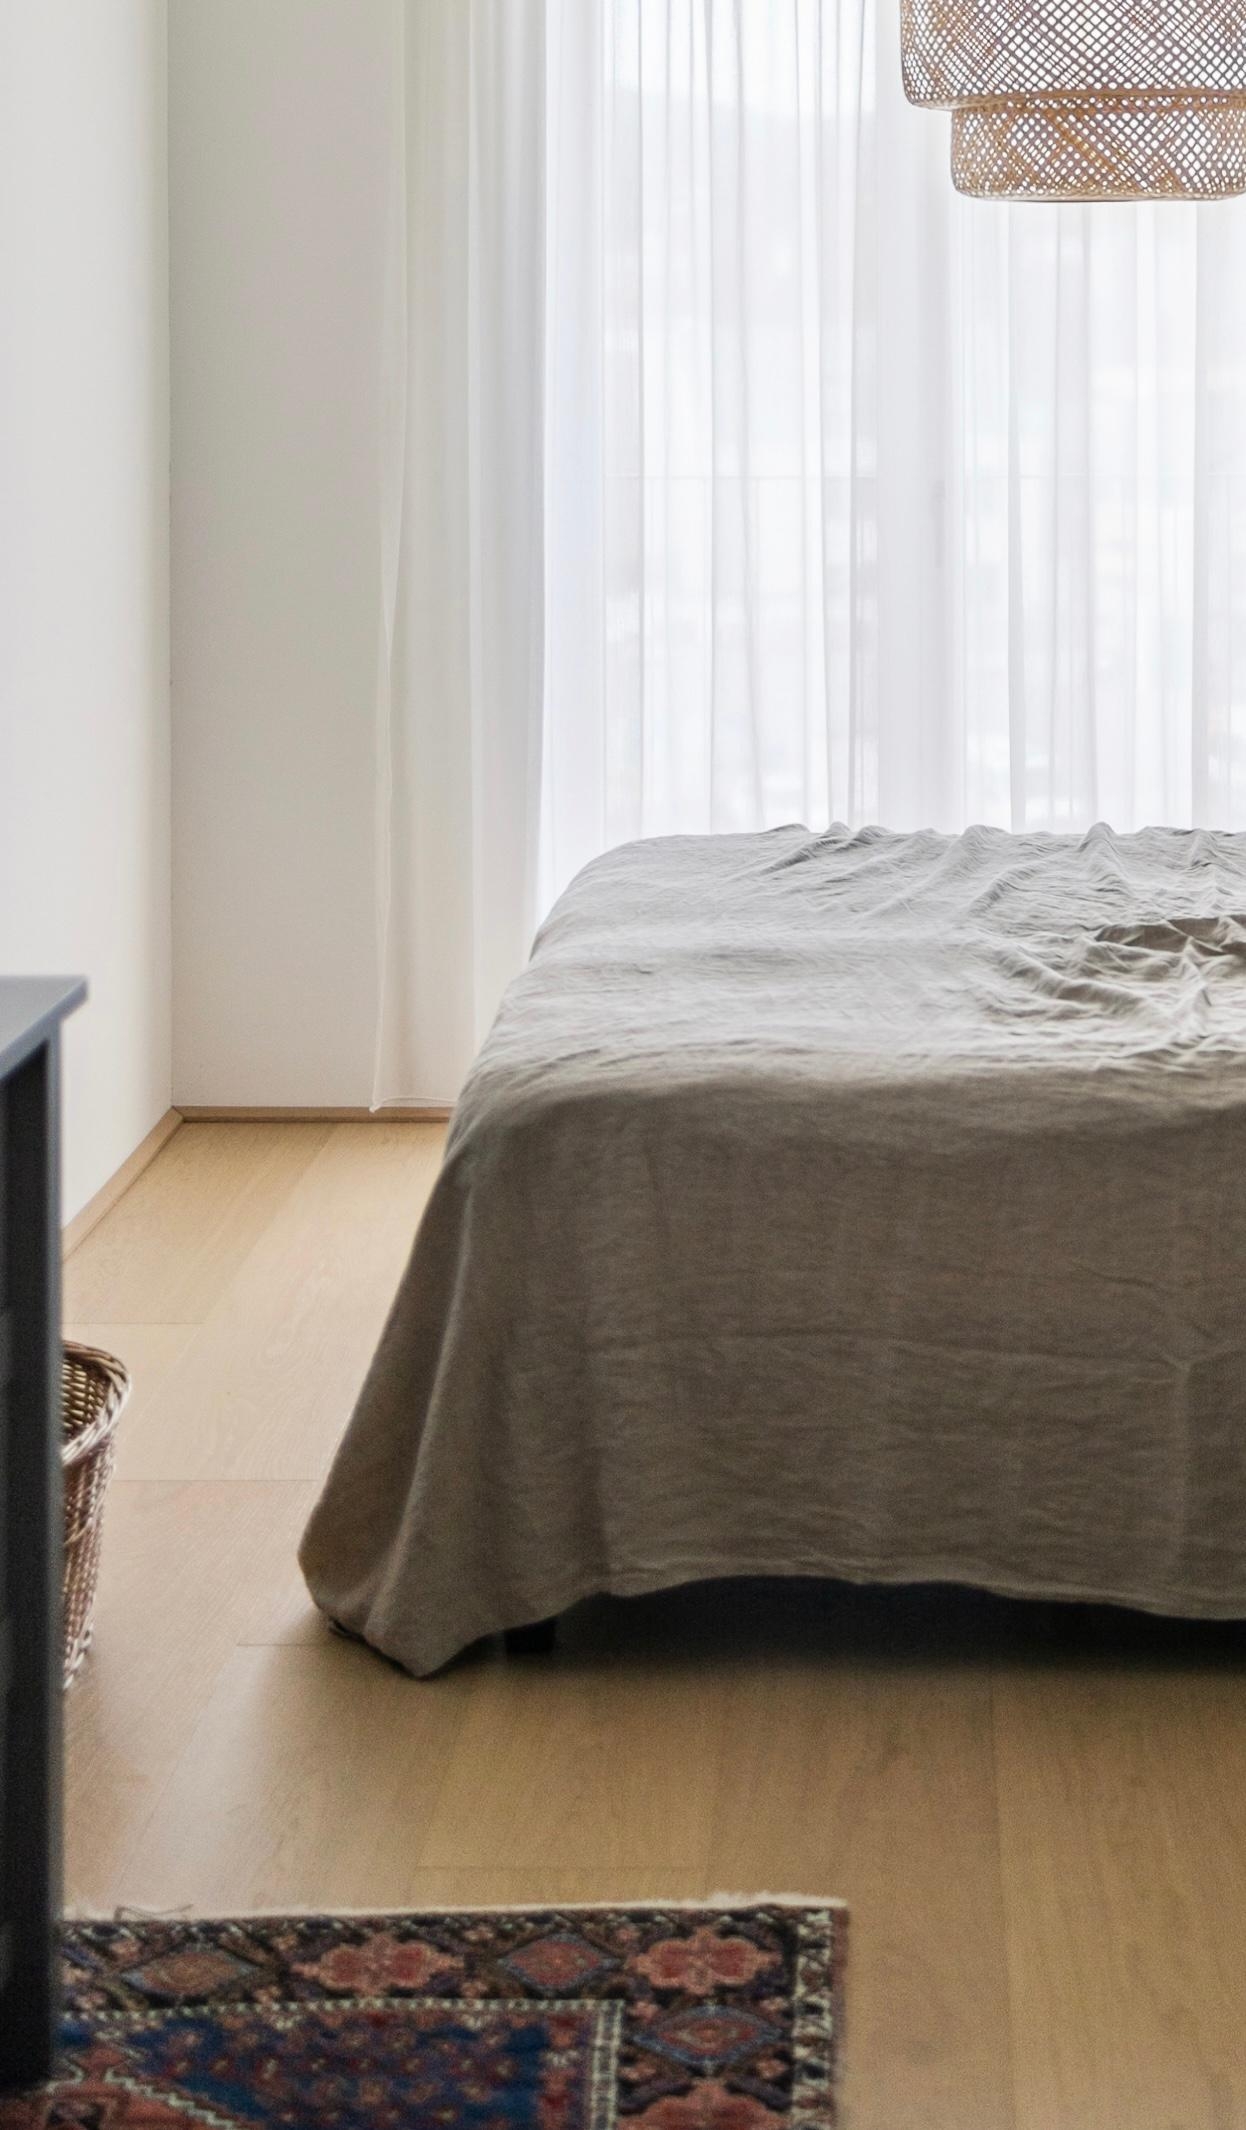 Home - wieder im eigenen Bett schlafen 🤍

#schlafzimmer #leinen #bettwäsche 

📷: @WienerWohnsinn (Bildausschnitt)